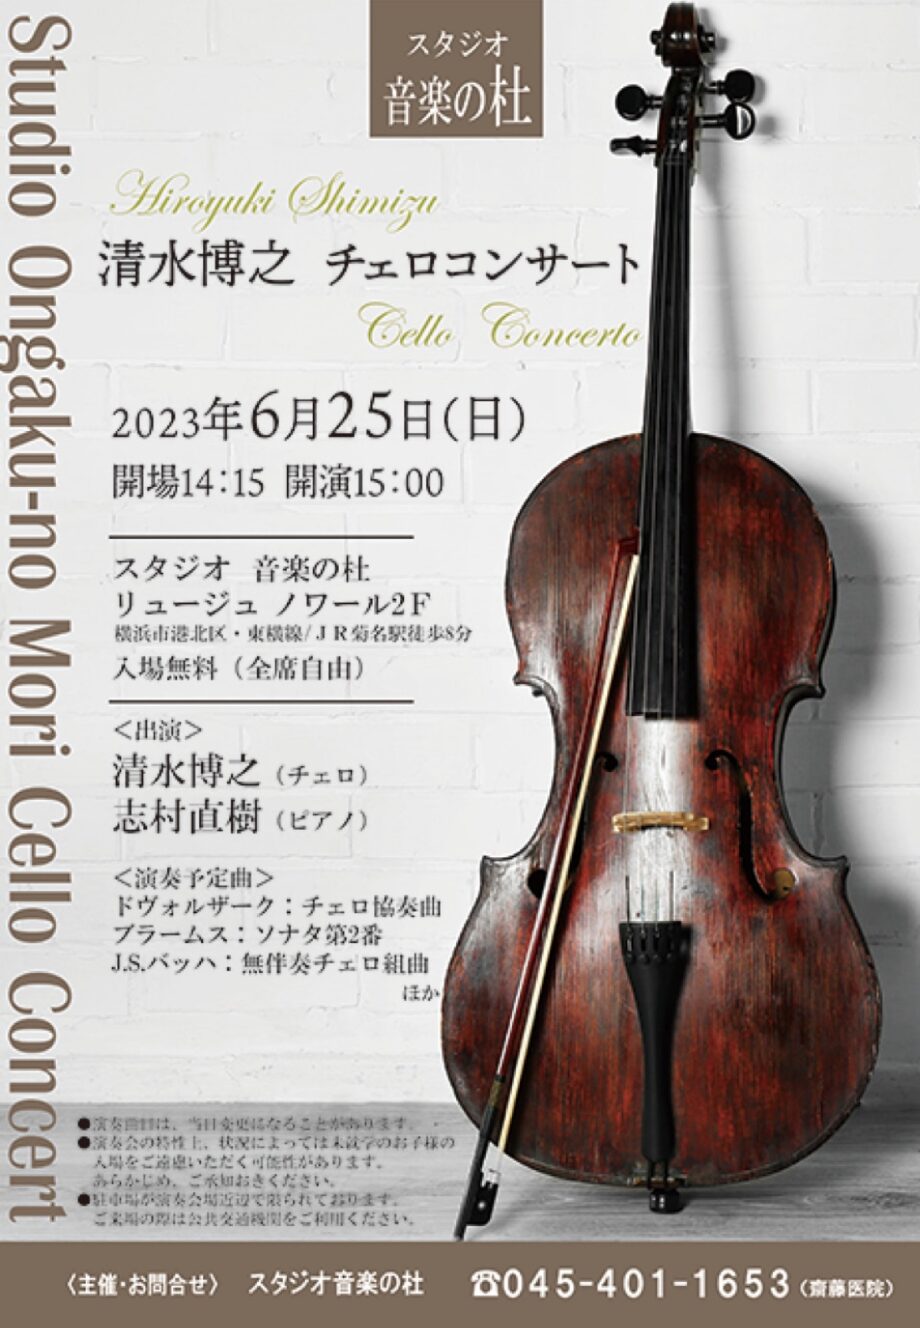 【入場無料】チェロコンサート開催 6月25日@スタジオ音楽の杜〈横浜・港北区〉